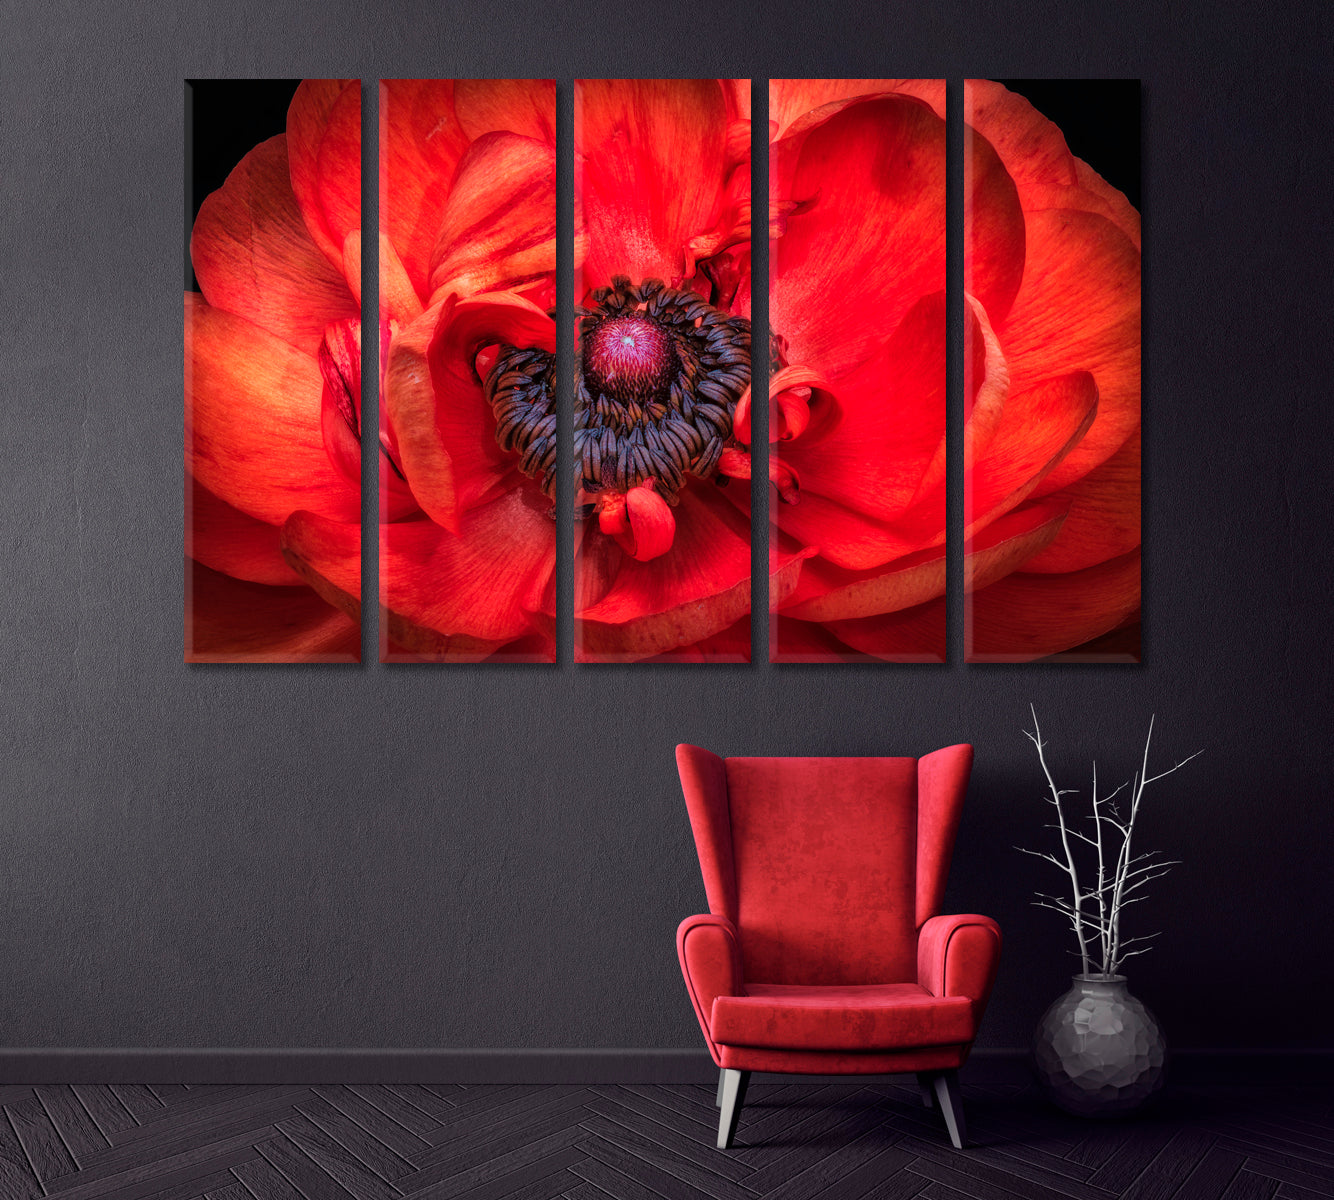 Red Buttercup Flower Canvas Print ArtLexy   